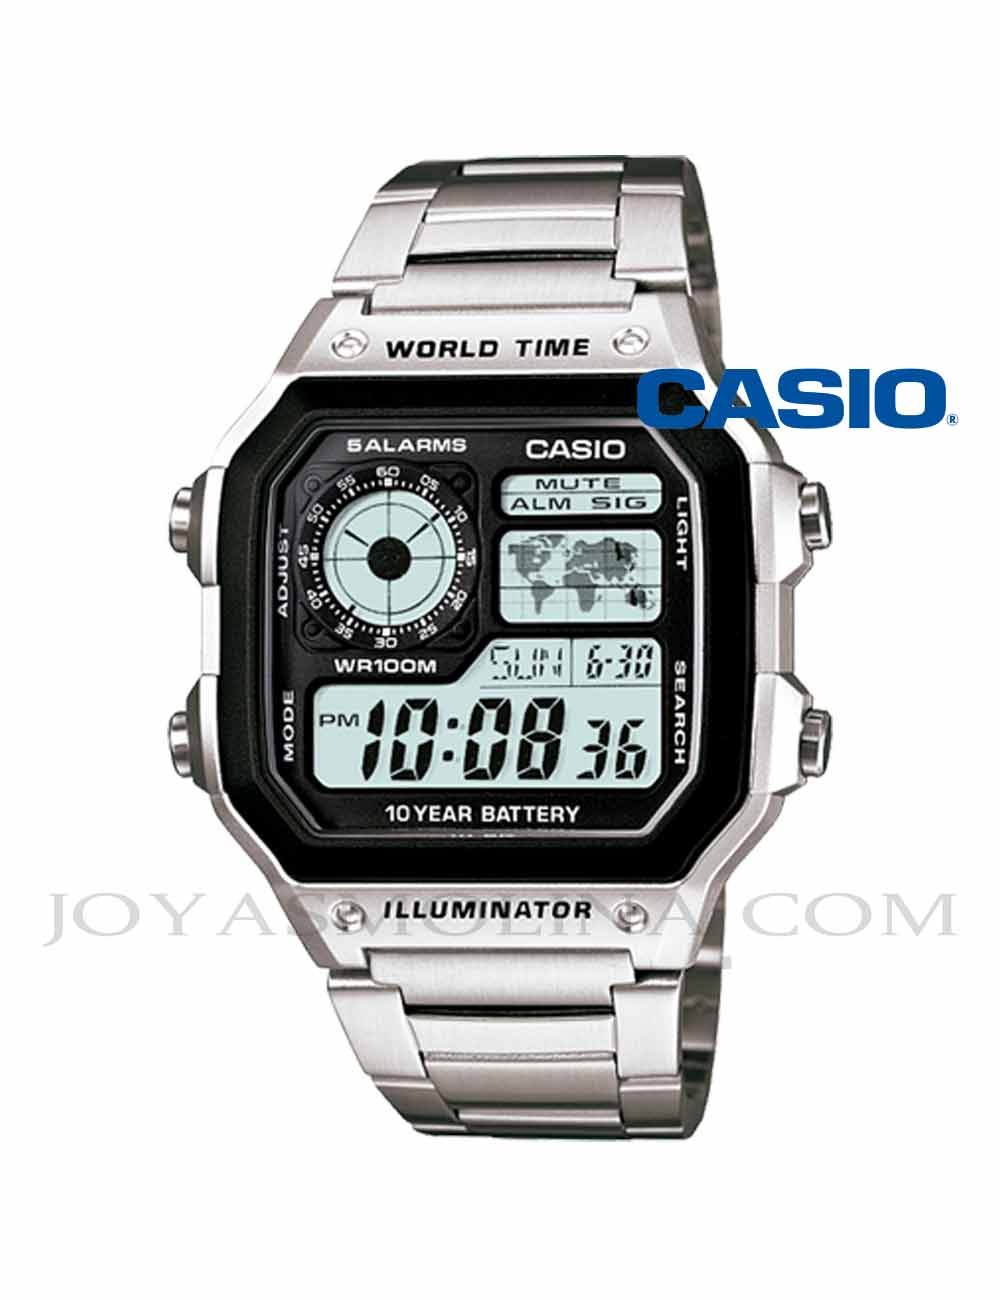 Reloj Casio digital retro hombre AE-1200WHD-1AV